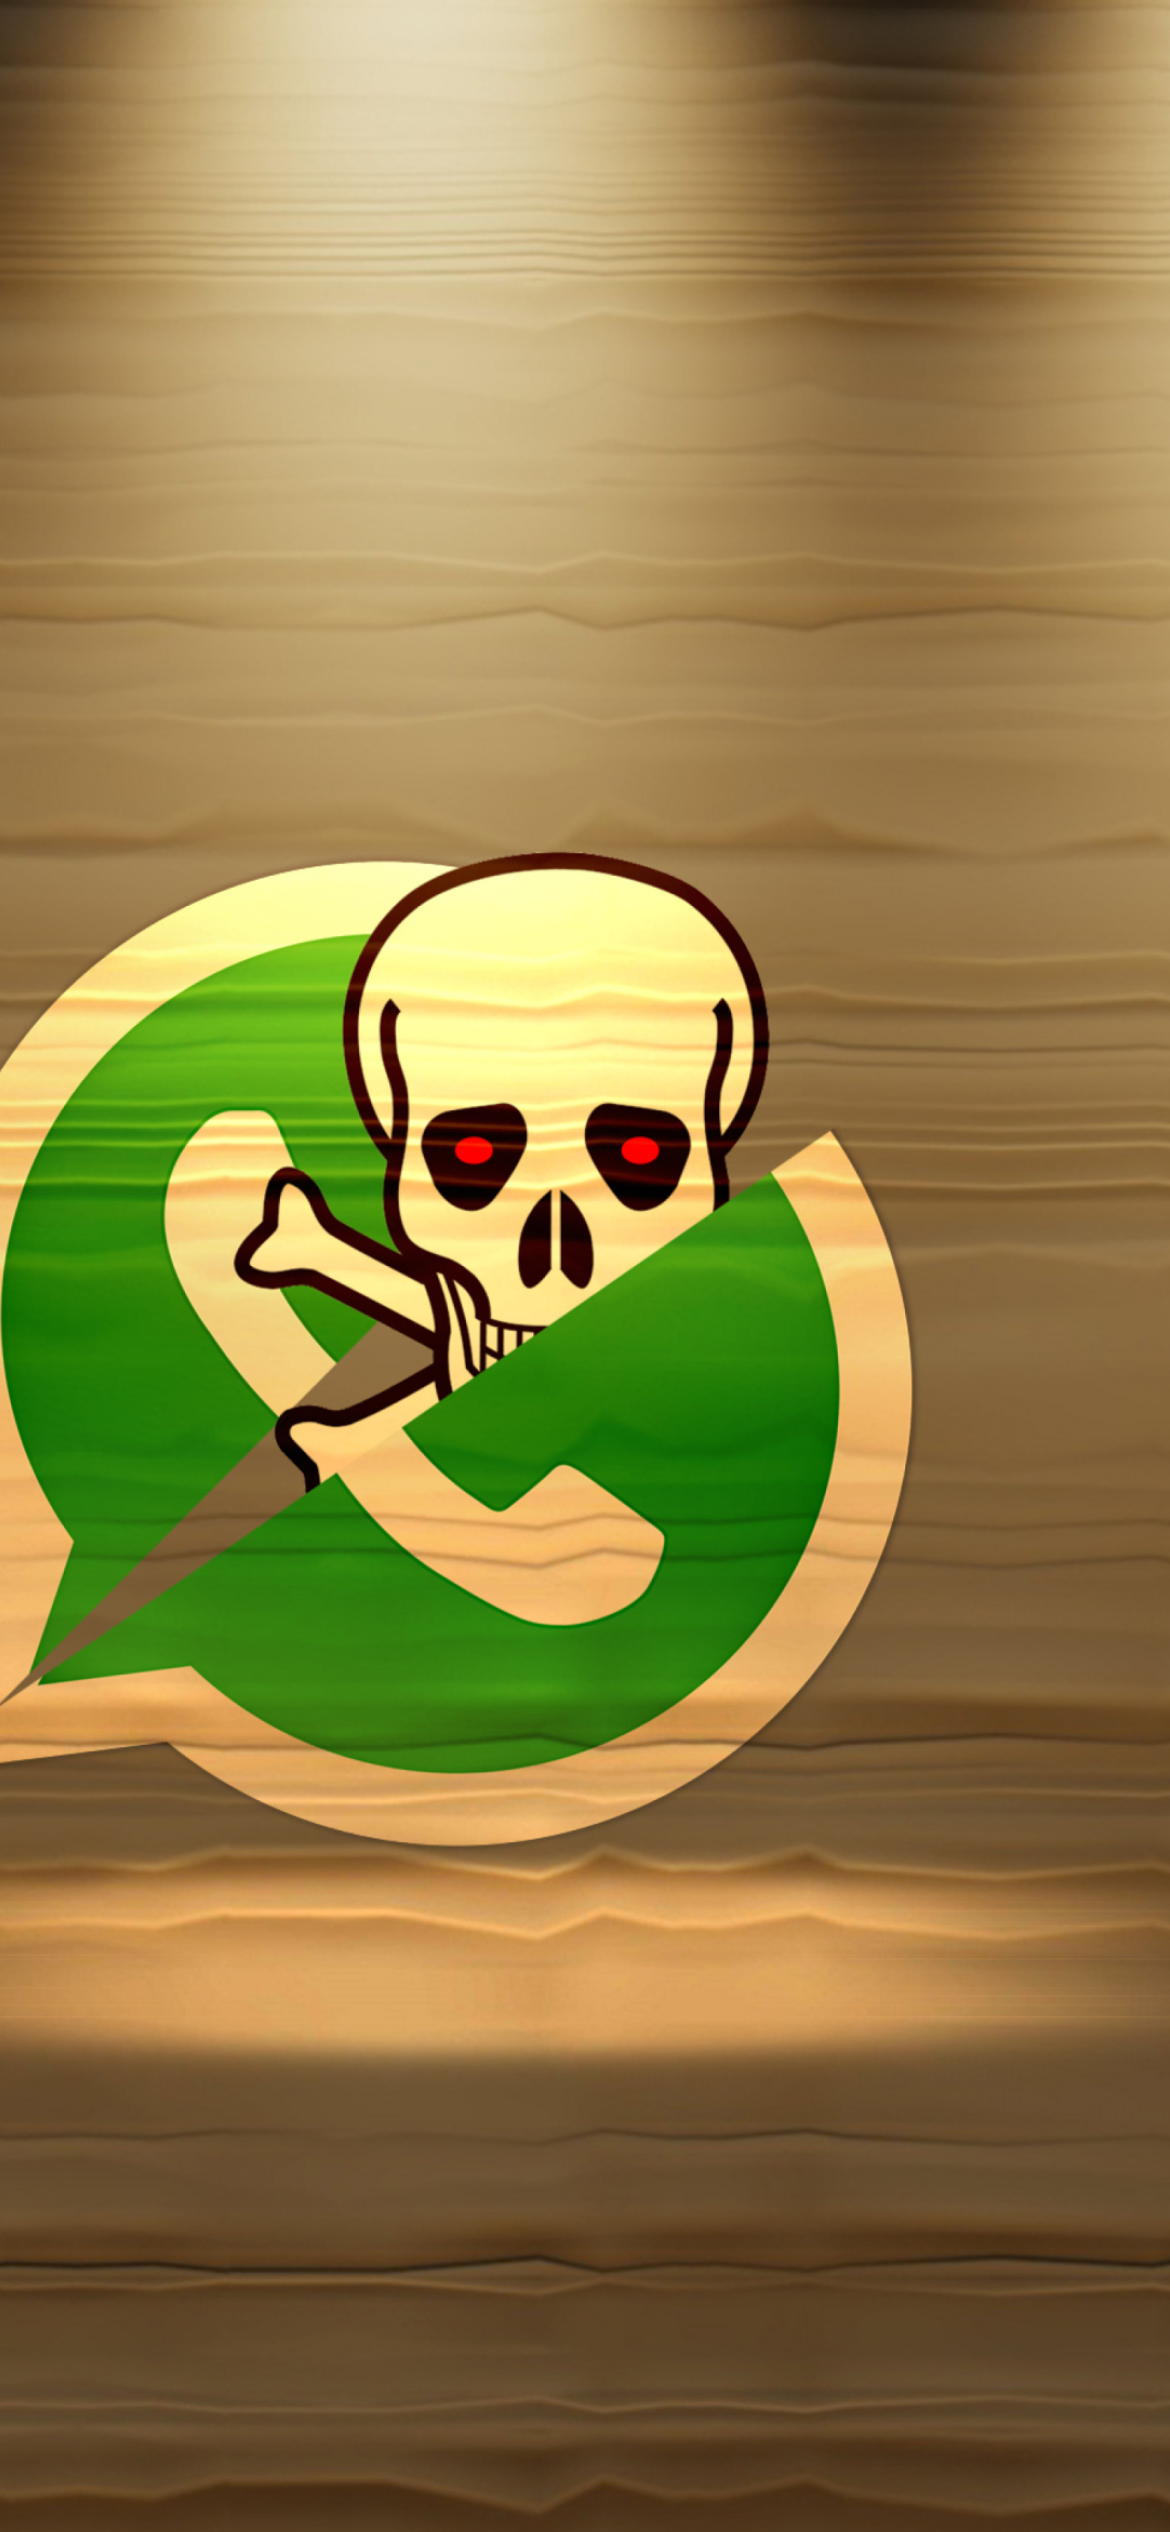 WhatsApp Messenger screenshot #1 1170x2532